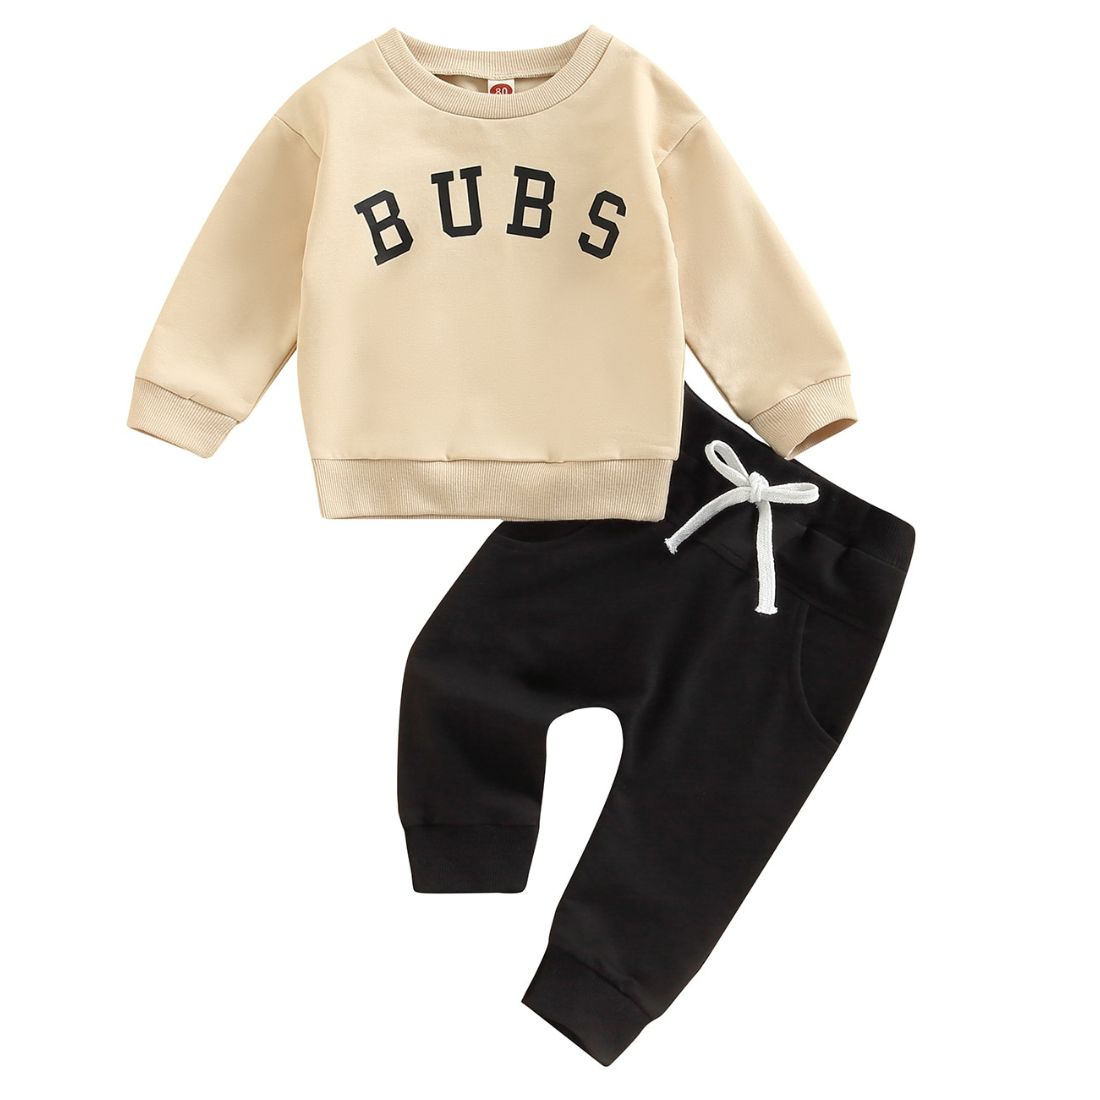 Bubs Sweaty Toddler Clothing Set